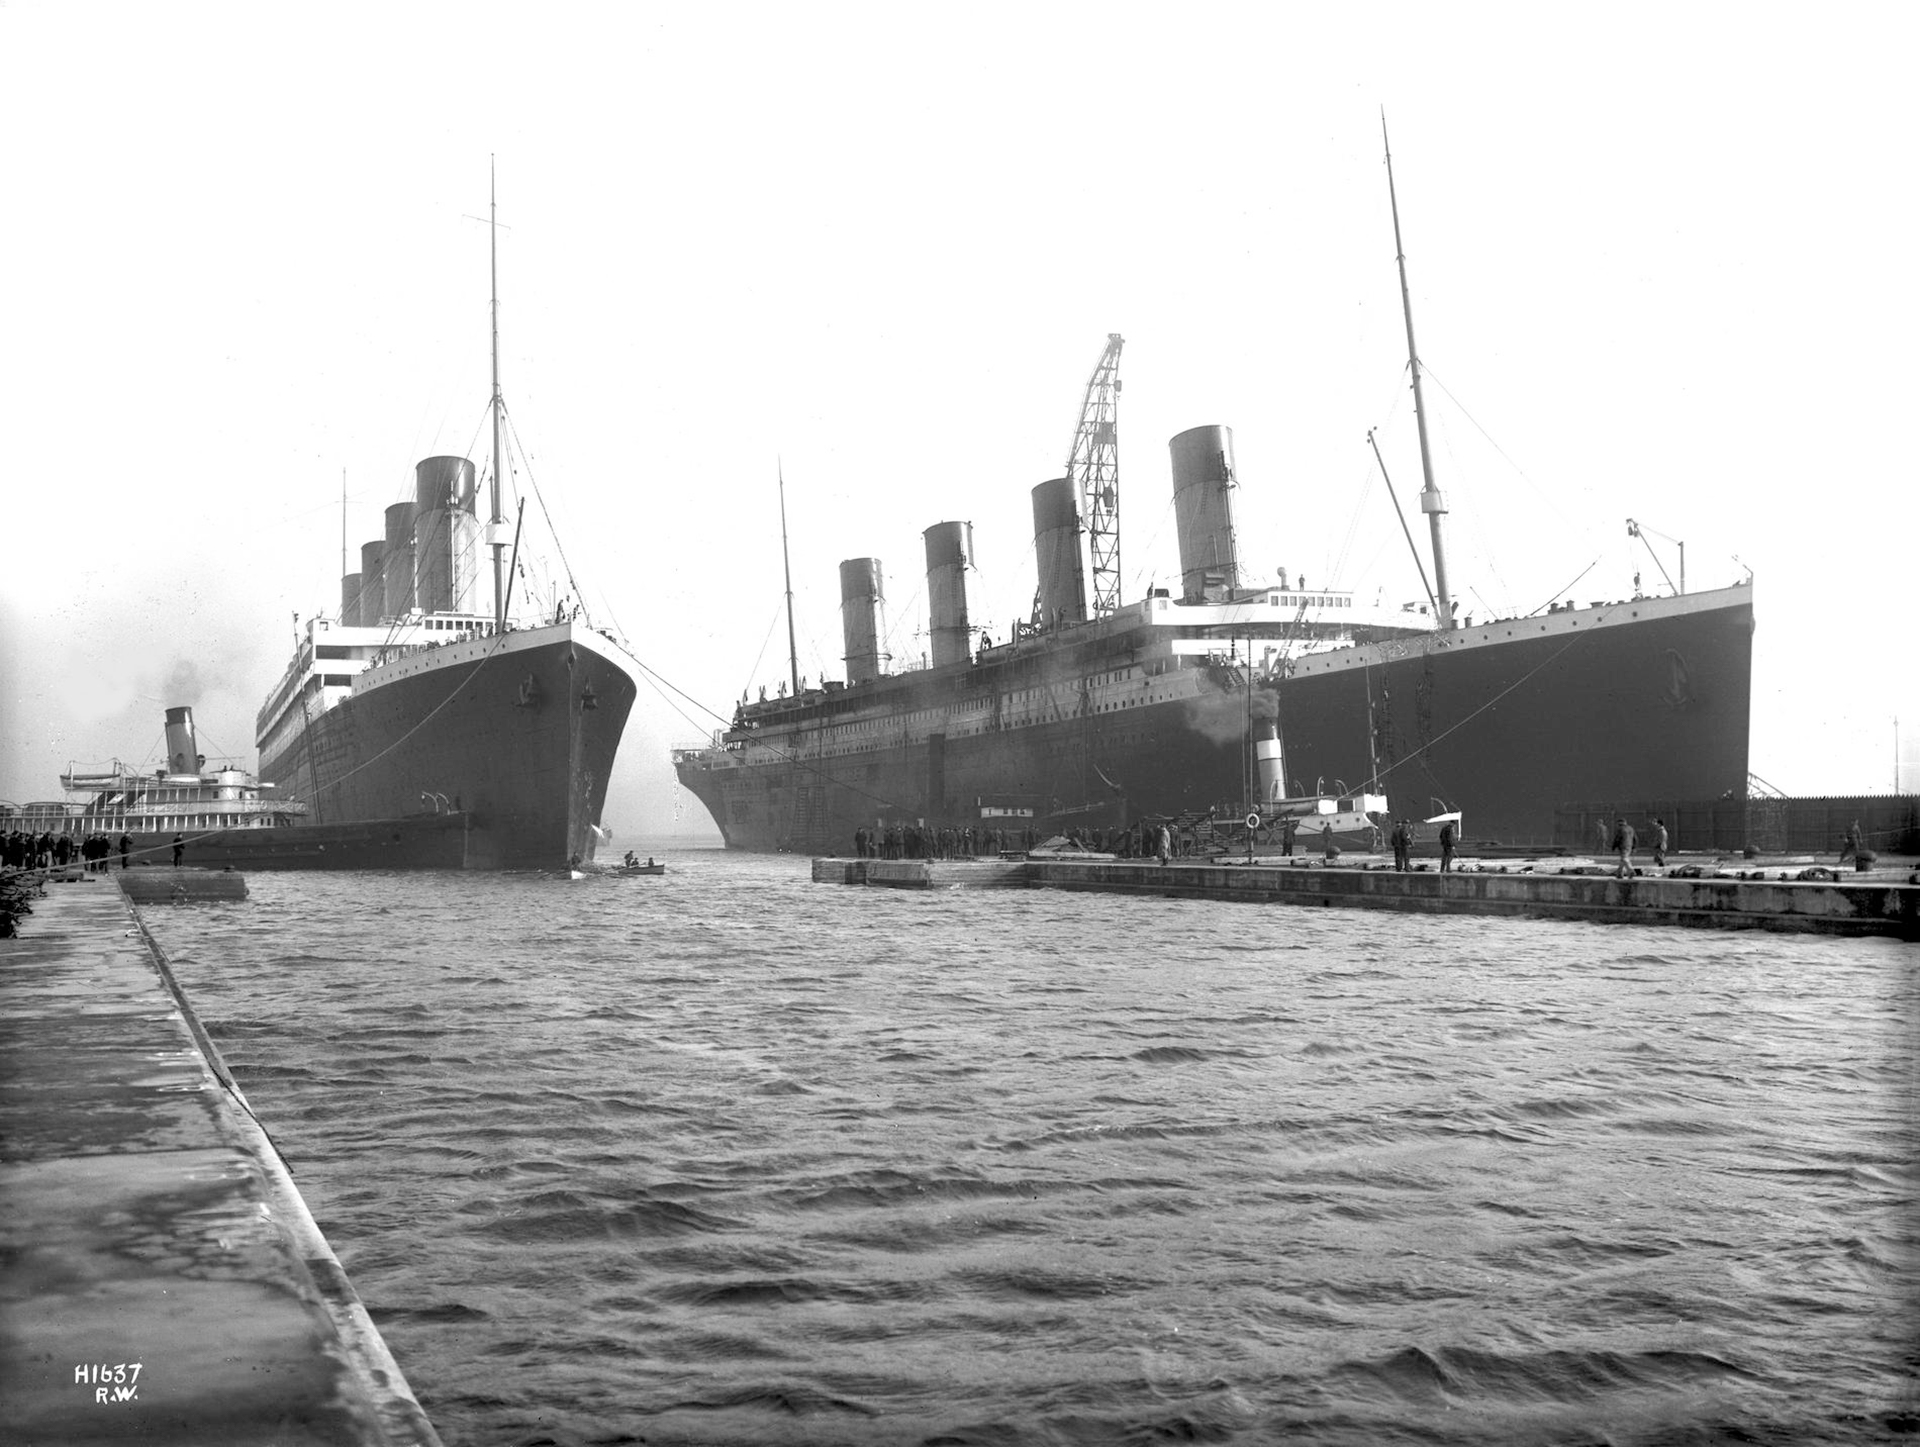 Una de las pocas imágenes donde se observa al Olympic junto al Titanic, ambos buques de la compañía White Star Line